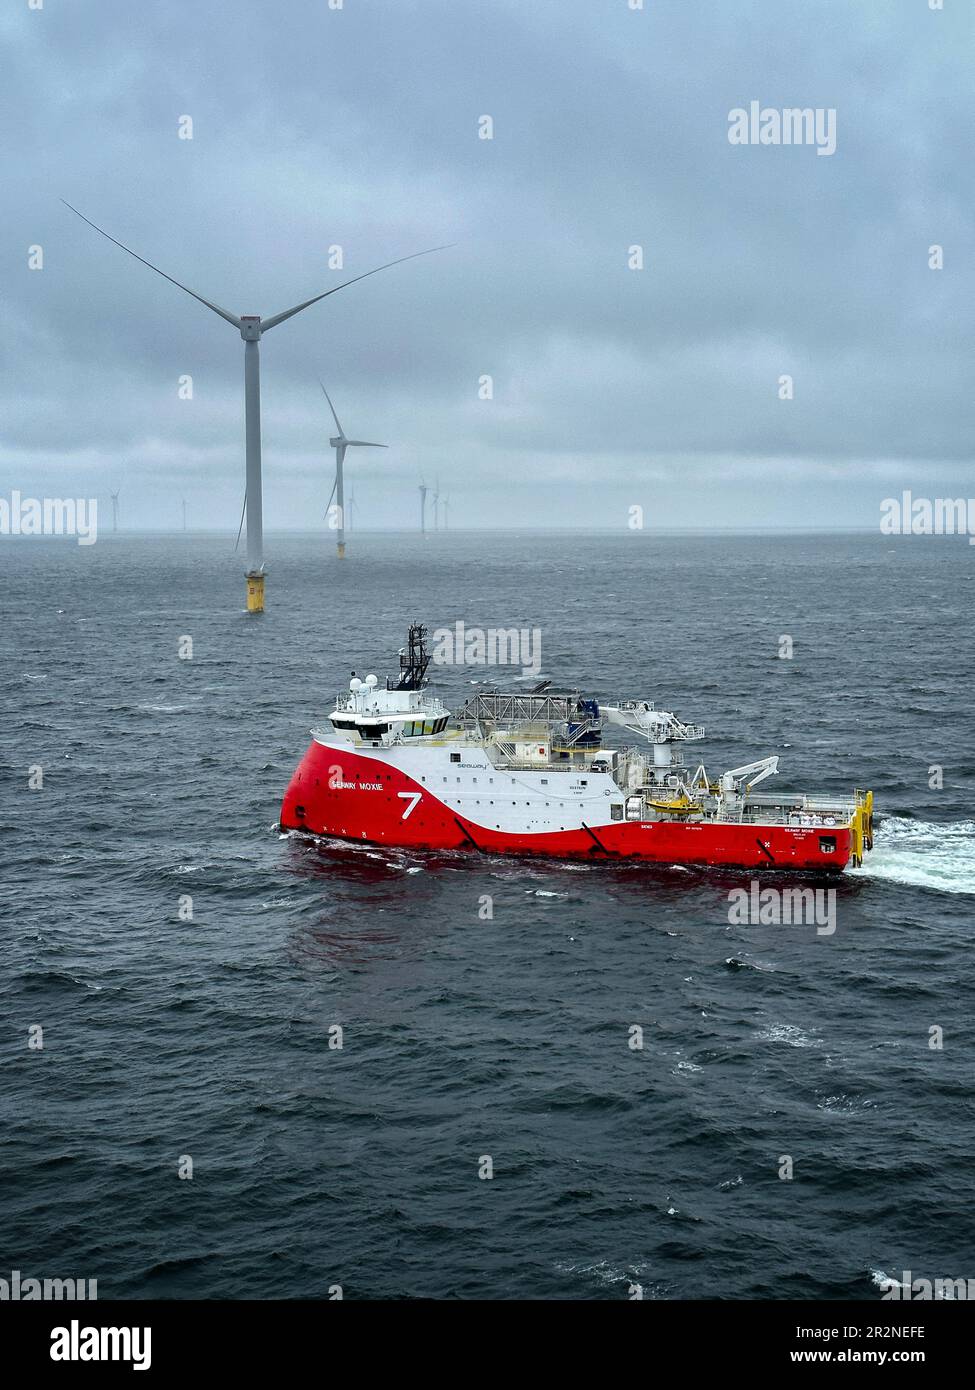 La Moxie de la voie maritime, navire d'approvisionnement dans un parc éolien offshore Banque D'Images